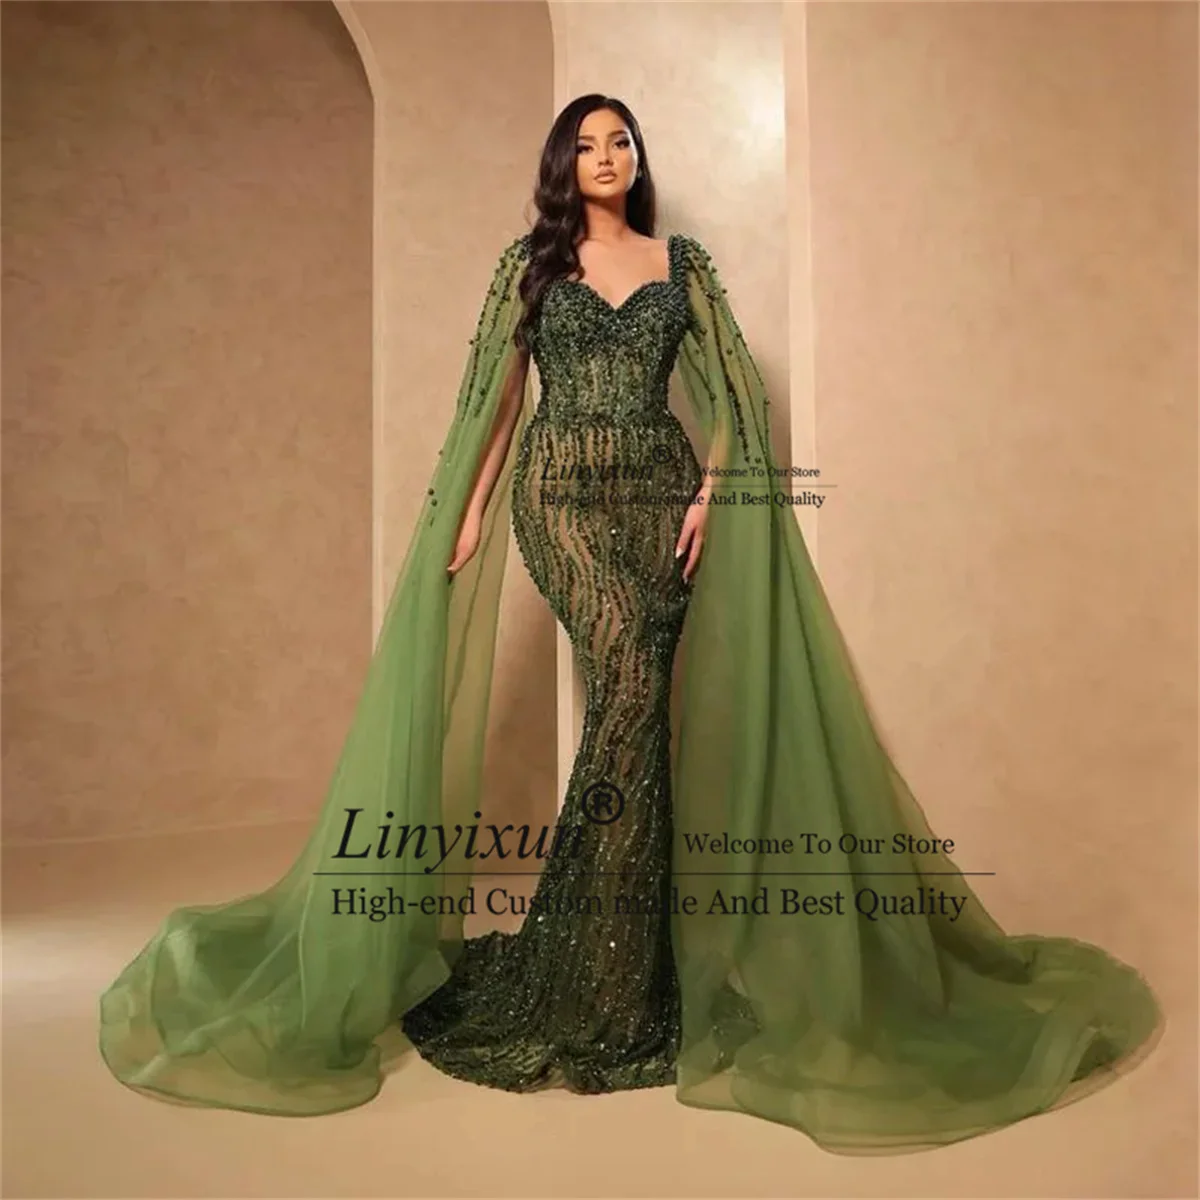 

Платье Русалка для выпускного вечера оливково-зеленого цвета с бусинами, платье ручной работы, официальное платье из арабского Дубая для торжественных случаев, элегантные вечерние платья